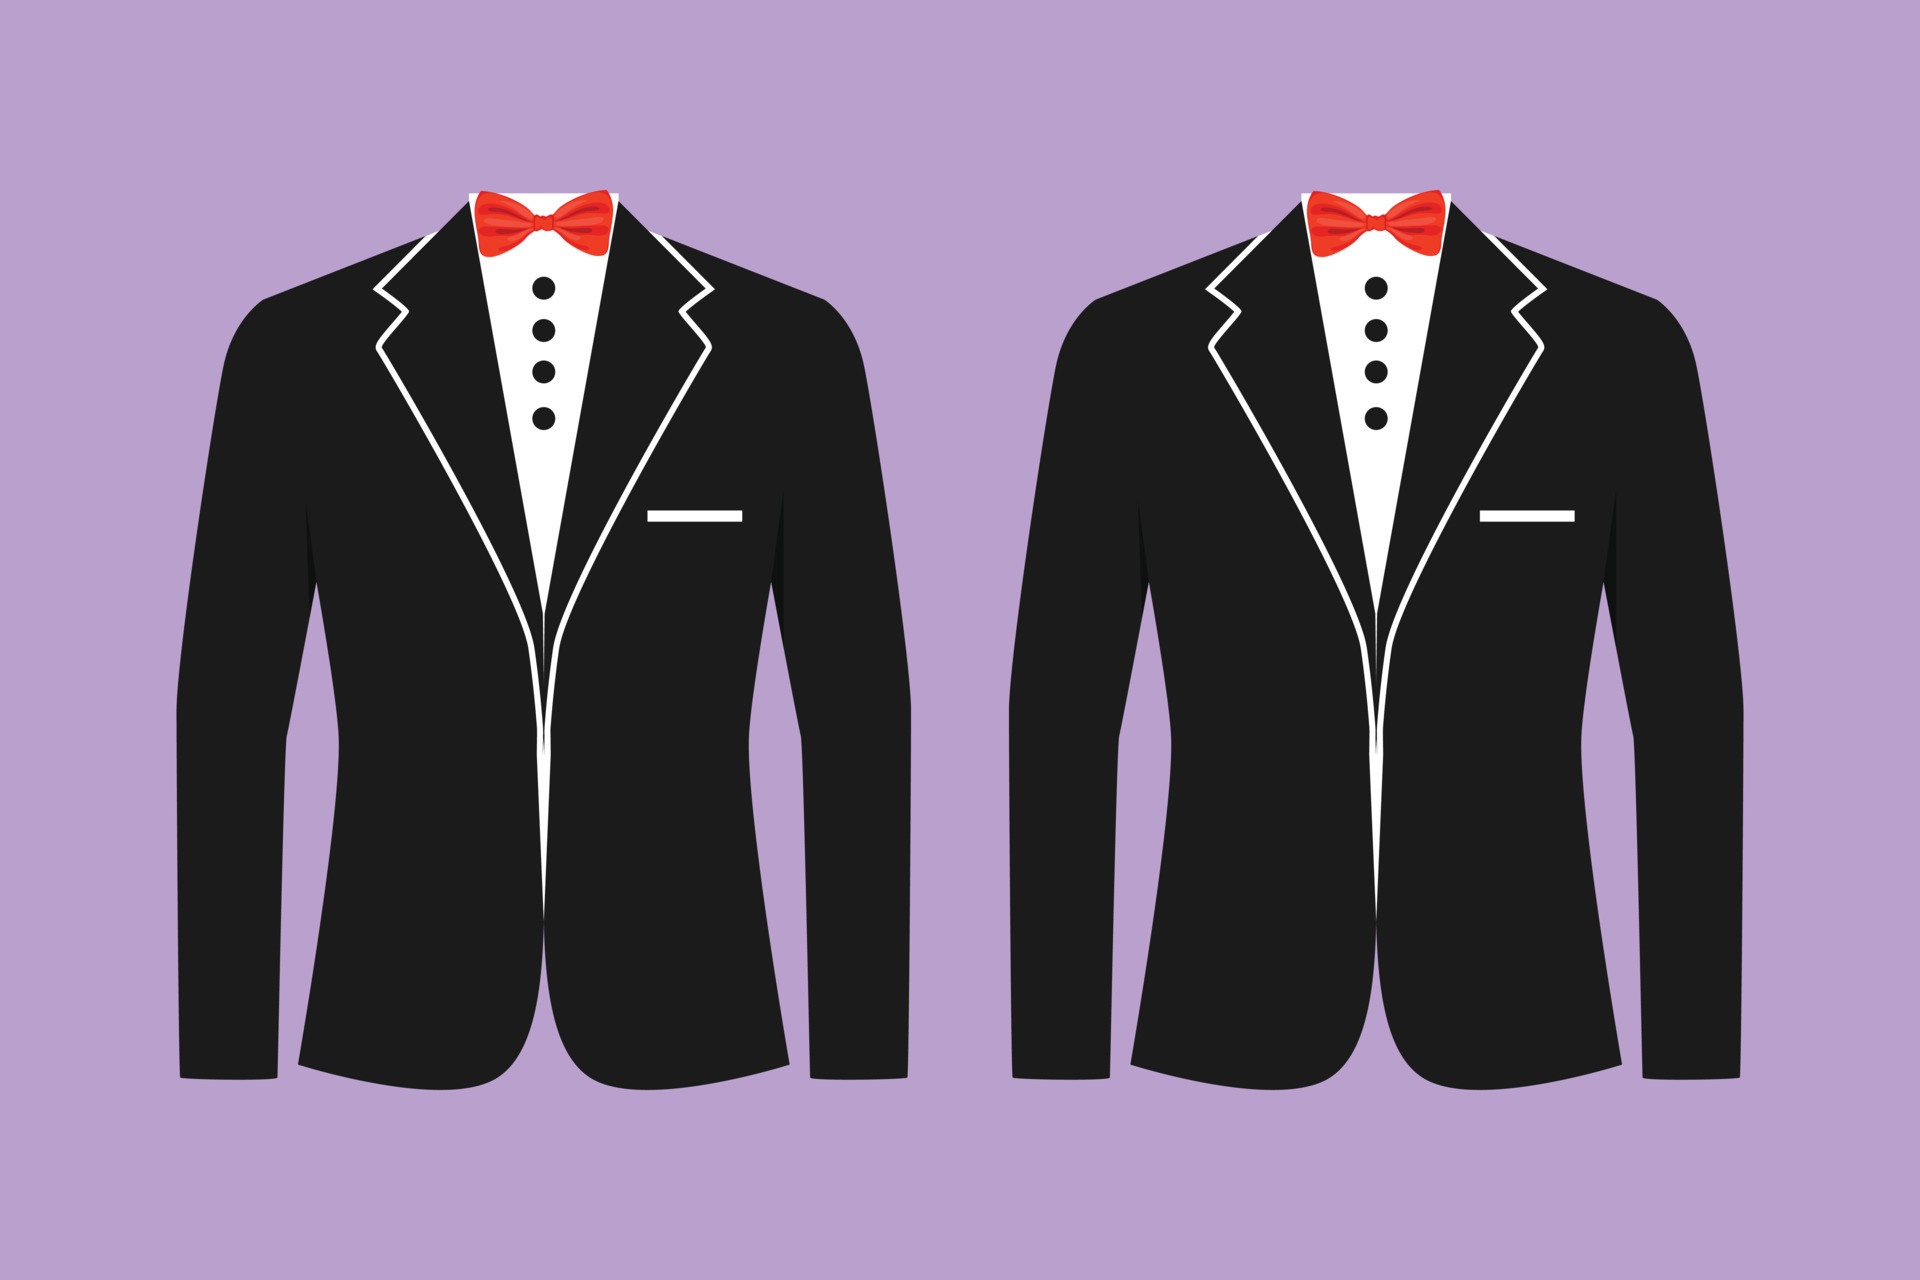 Ilustração 3d de um traje formal de terno sob medida para ocasiões